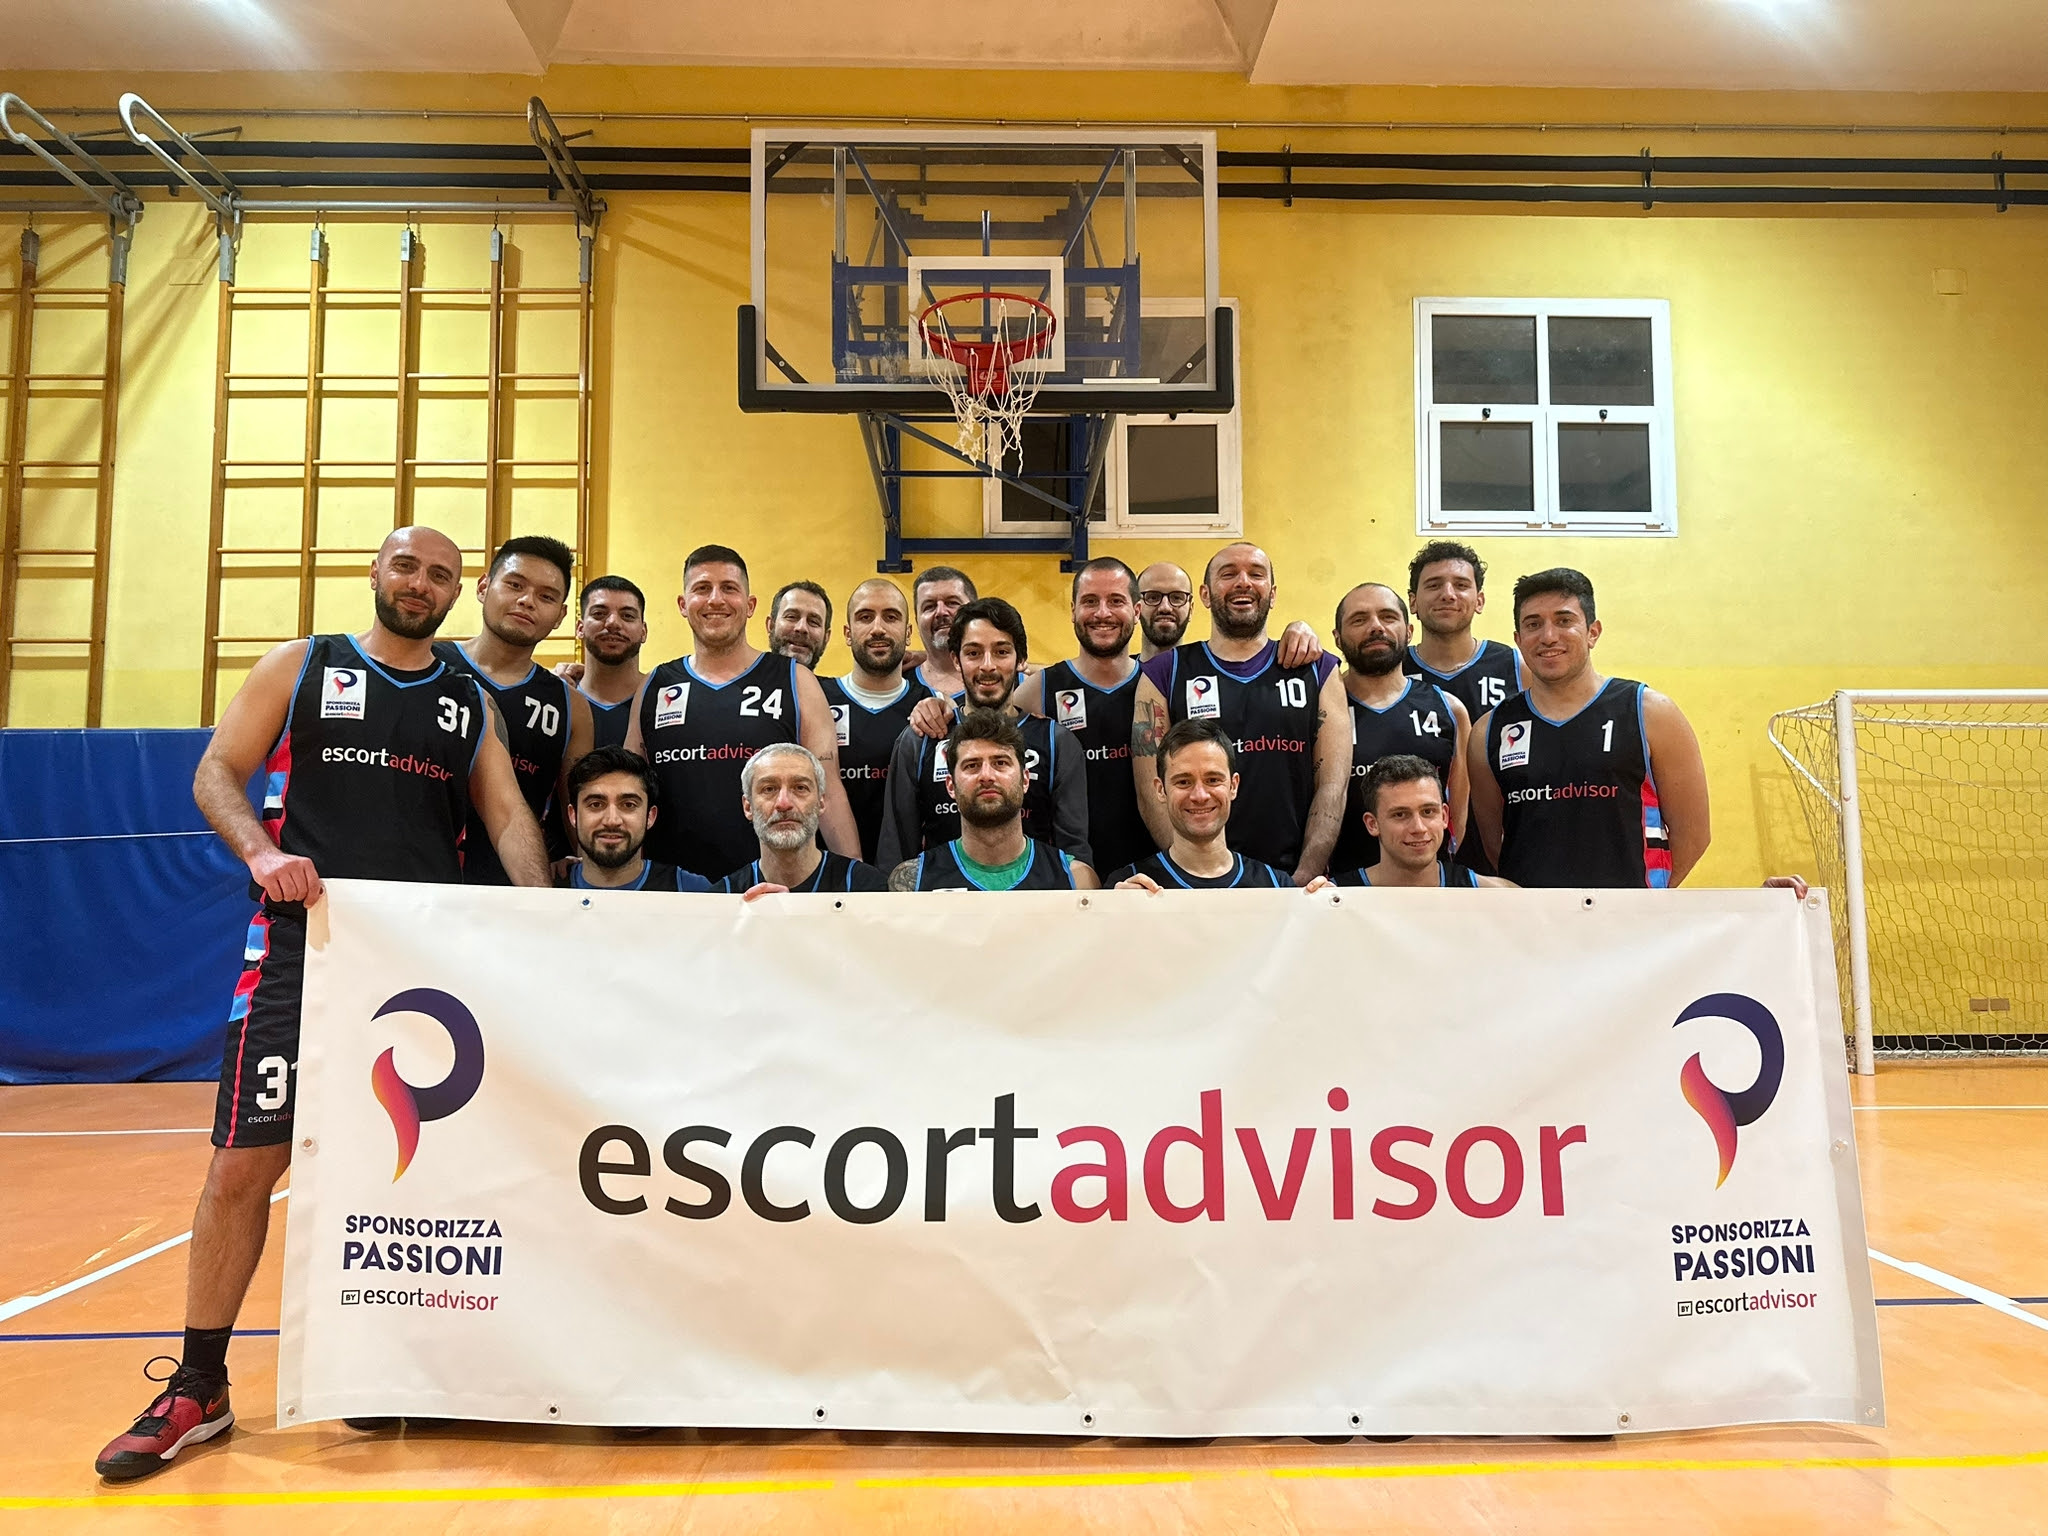 La squadra di basket di San Giuliano Milanese veste i colori del primo sito di recensioni di escort in Europa